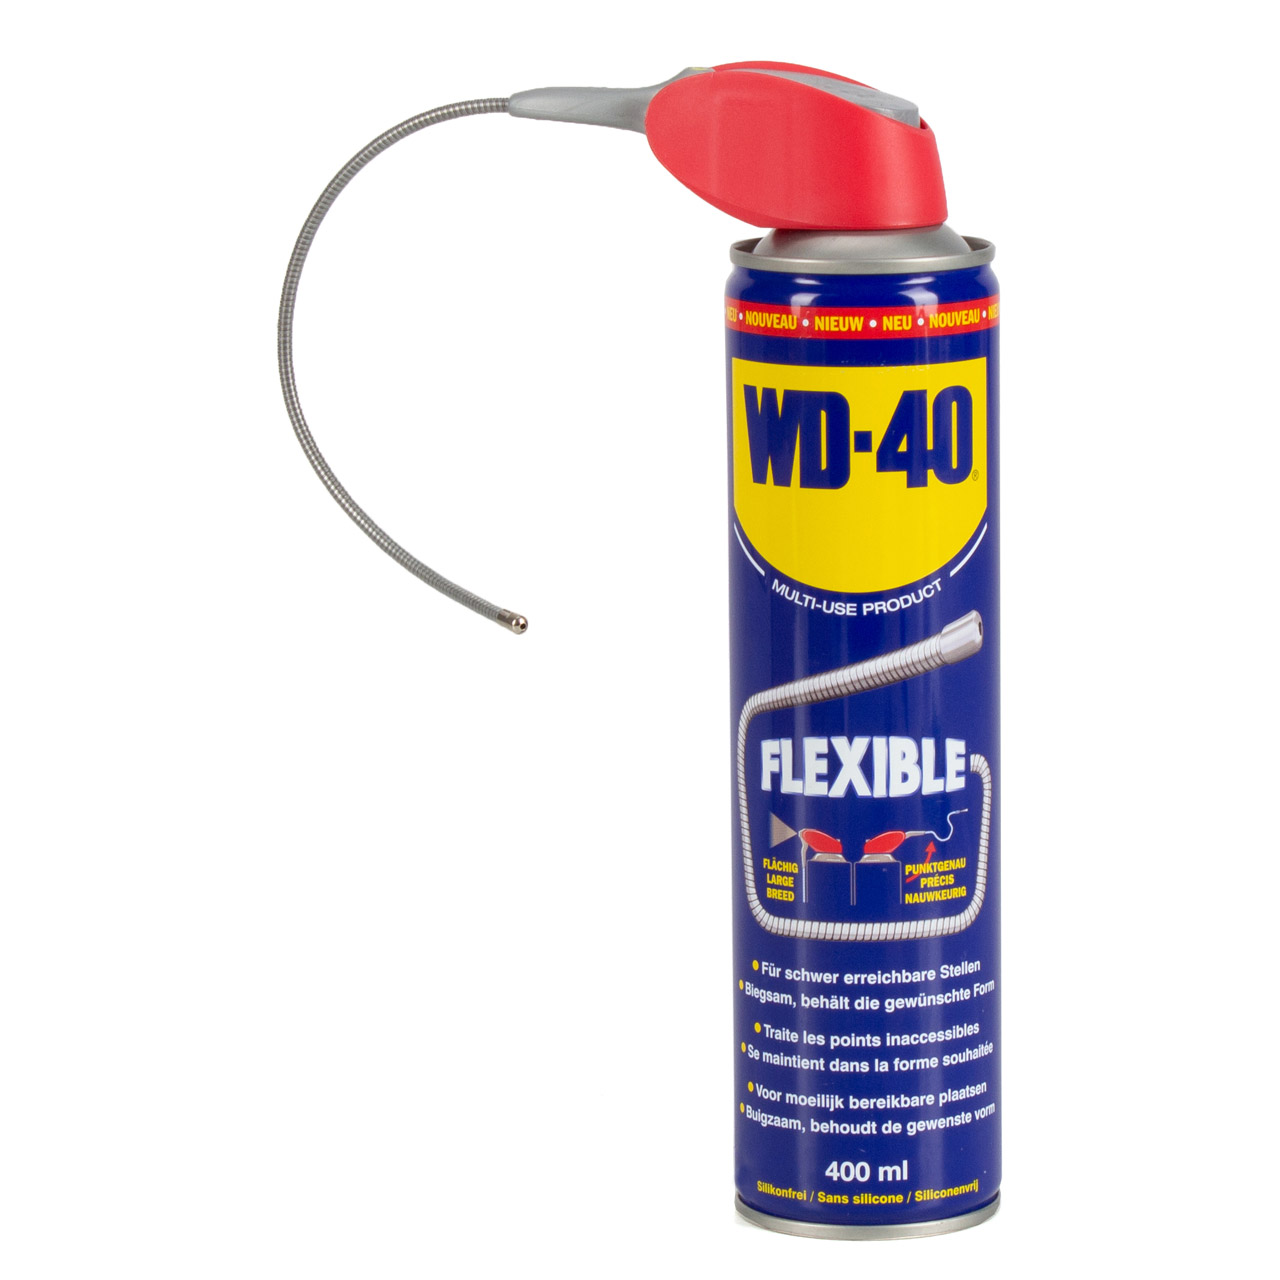 WD-40 31692 FLEXIBLE Multifunktionsöl Kriechöl Rostlöser Mehrzwecköl Vielzweck 400ml